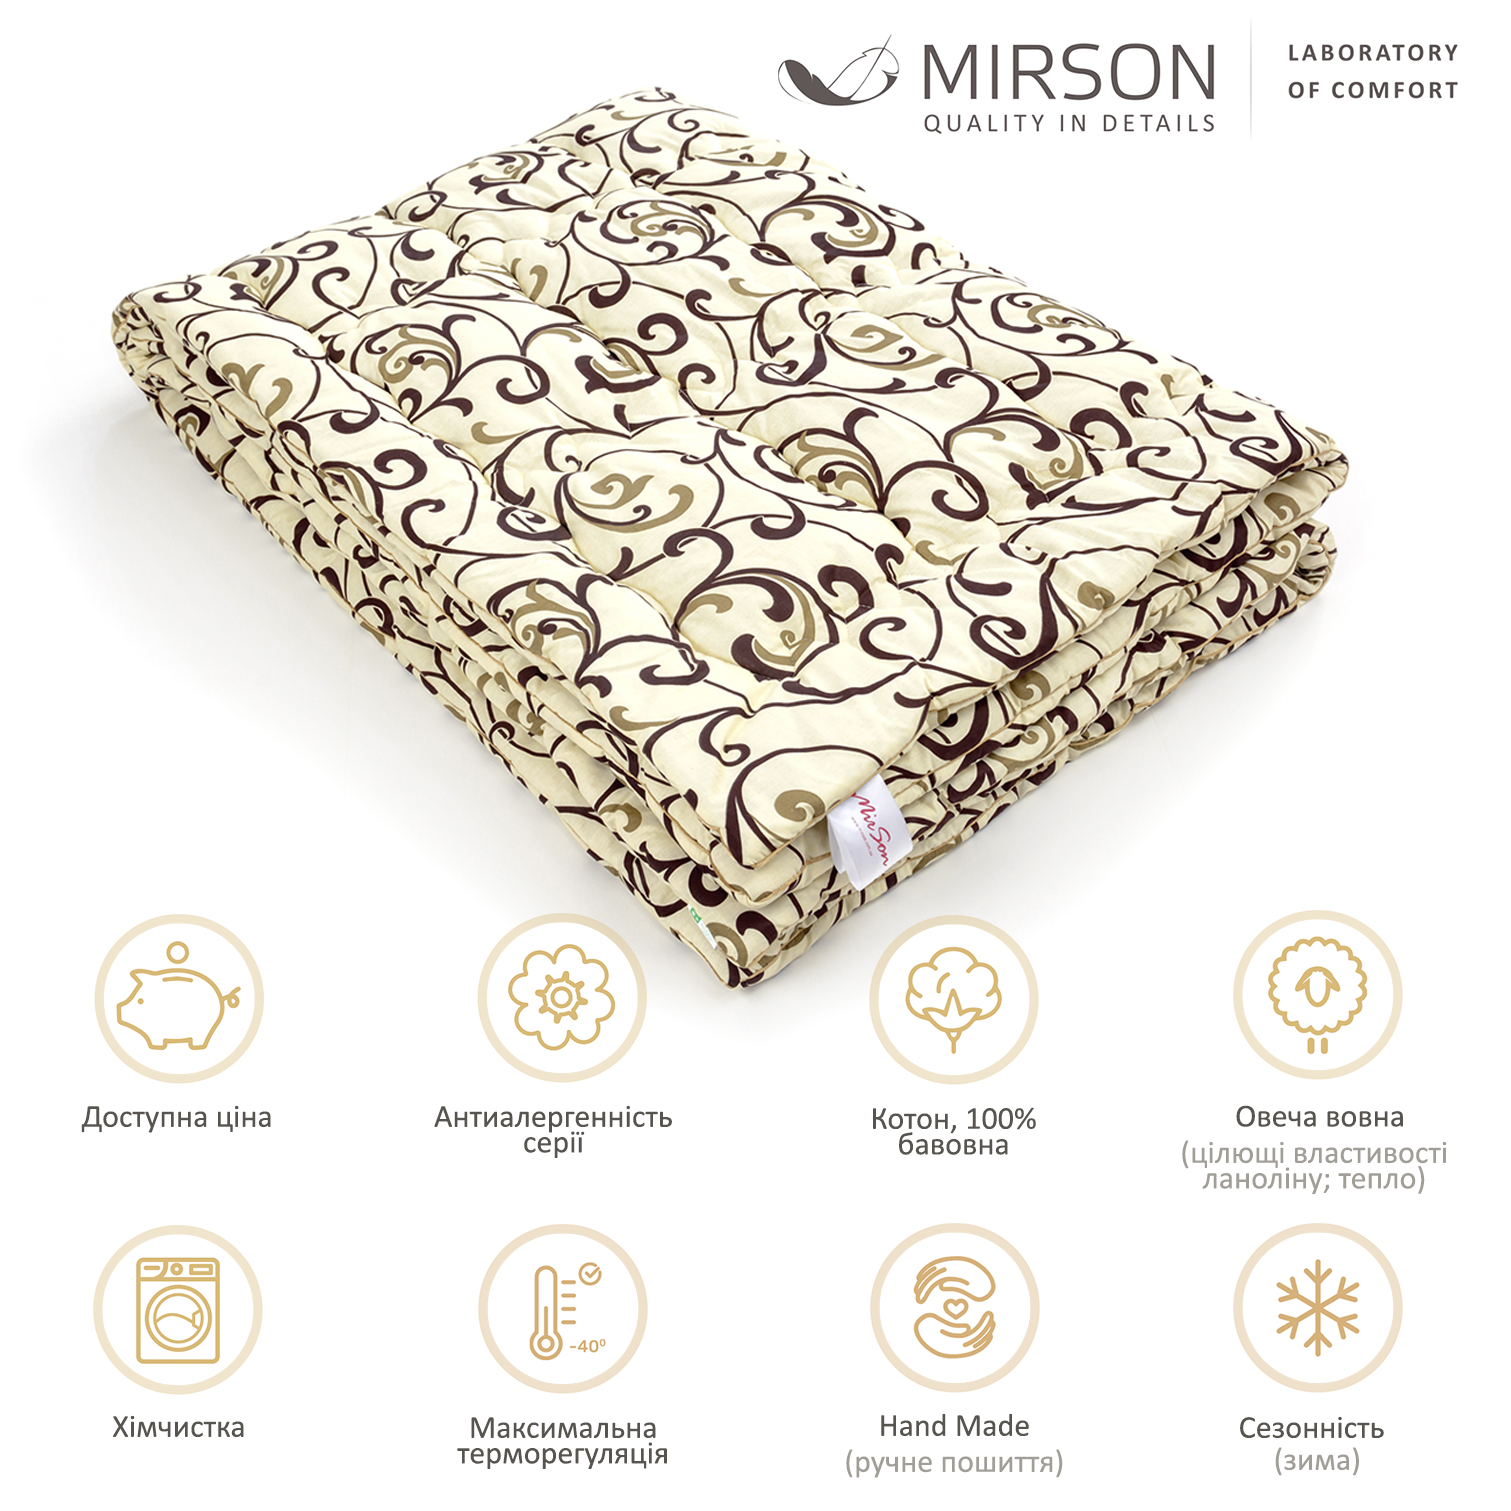 Одеяло шерстяное MirSon Hand Made №163, зимнее, 110x140 см, бежевое с узором - фото 5